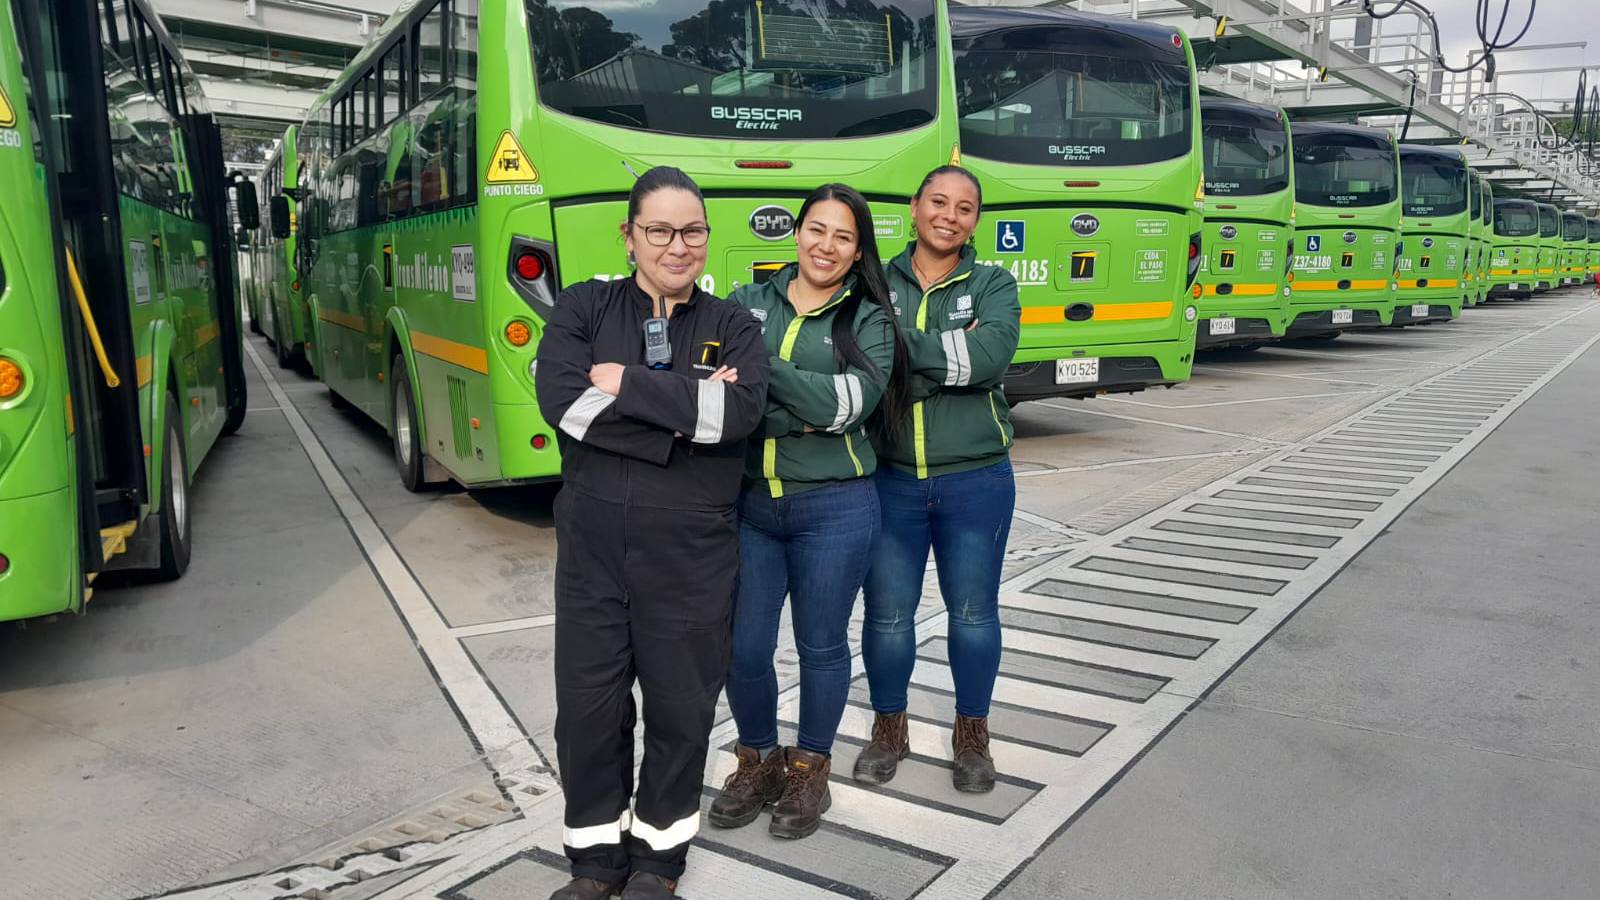 IMPRONTA SOCIALUna opción ecológica liderada por mujeres: Bogotá prueba un nuevo modelo de transporte público